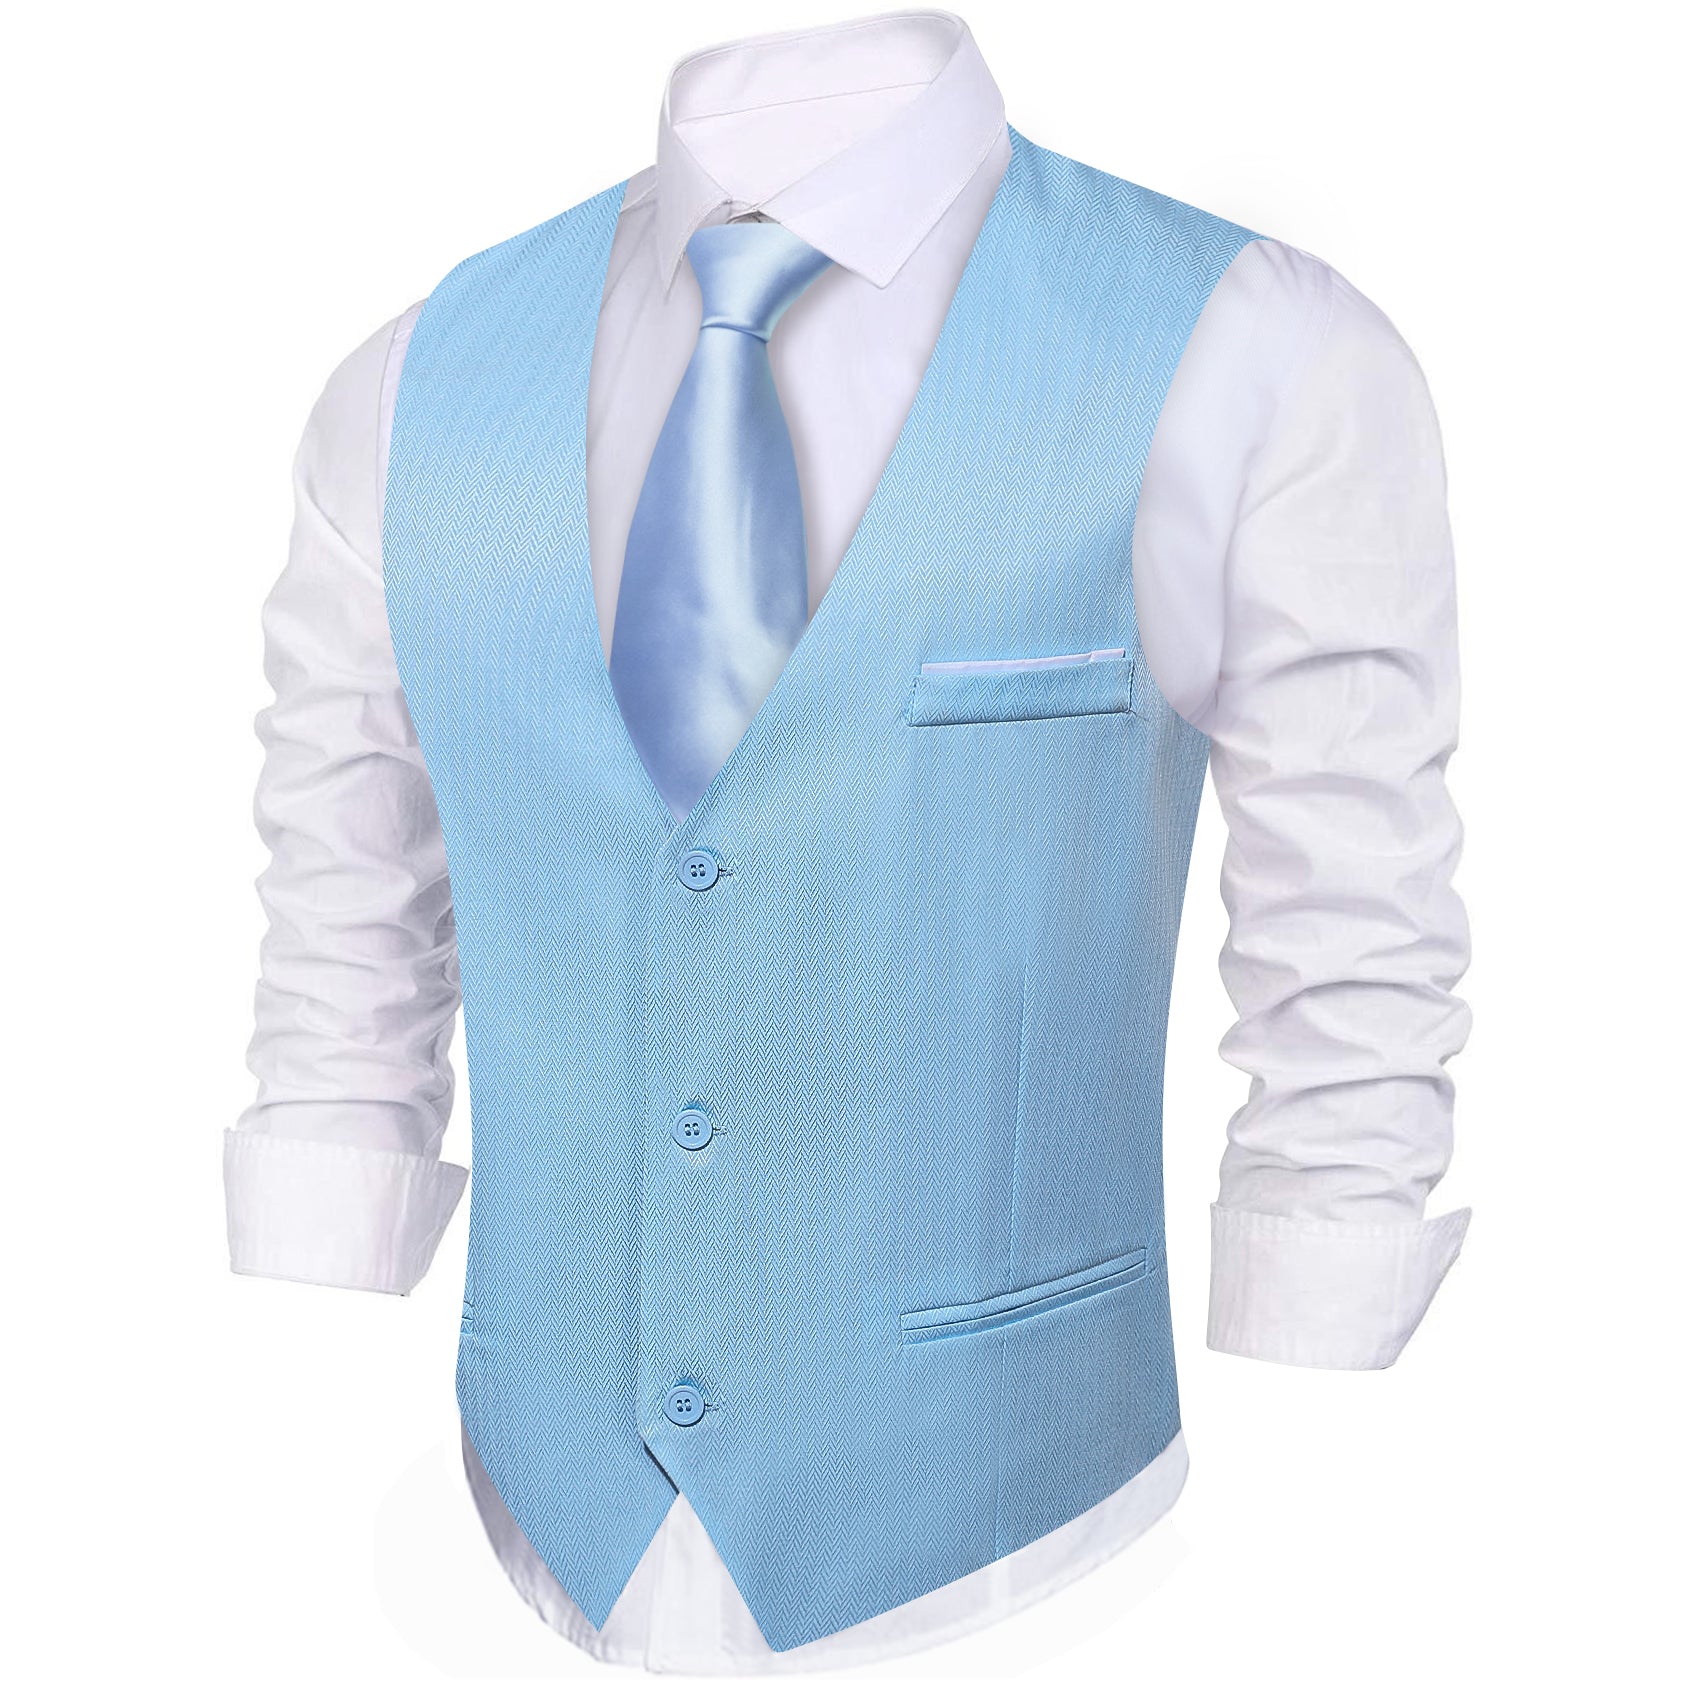 Men's Pale Blue Solid Vest Suit for Business